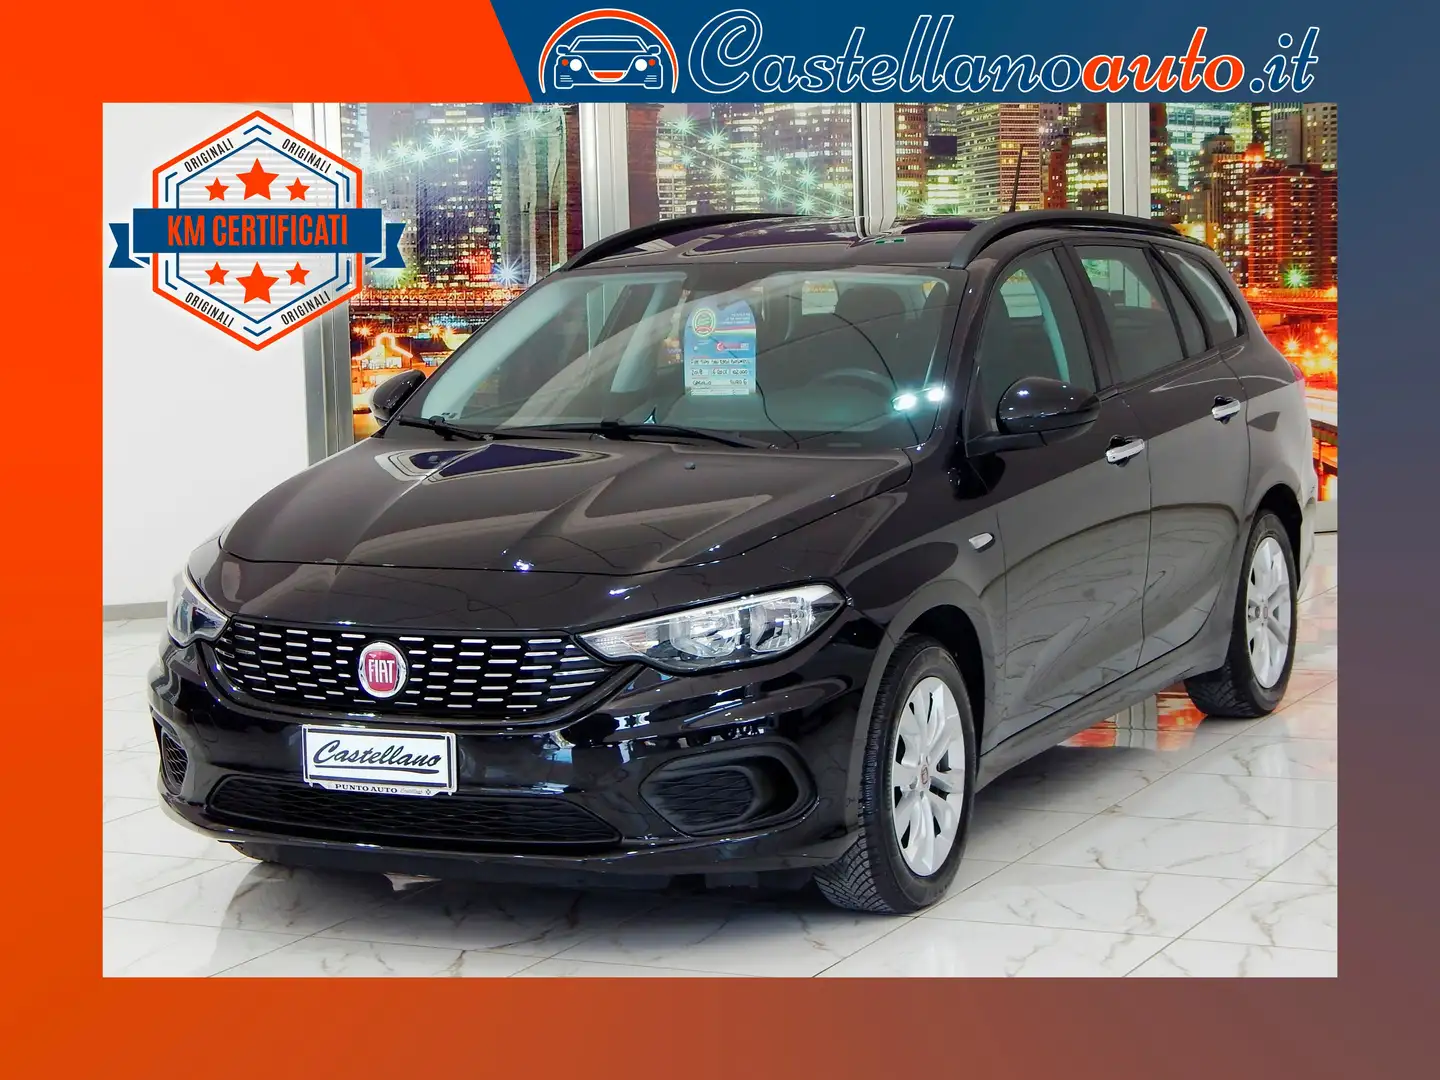 usato Fiat Tipo Station wagon a Orta Nova - Foggia - Fg per € 10.200,-